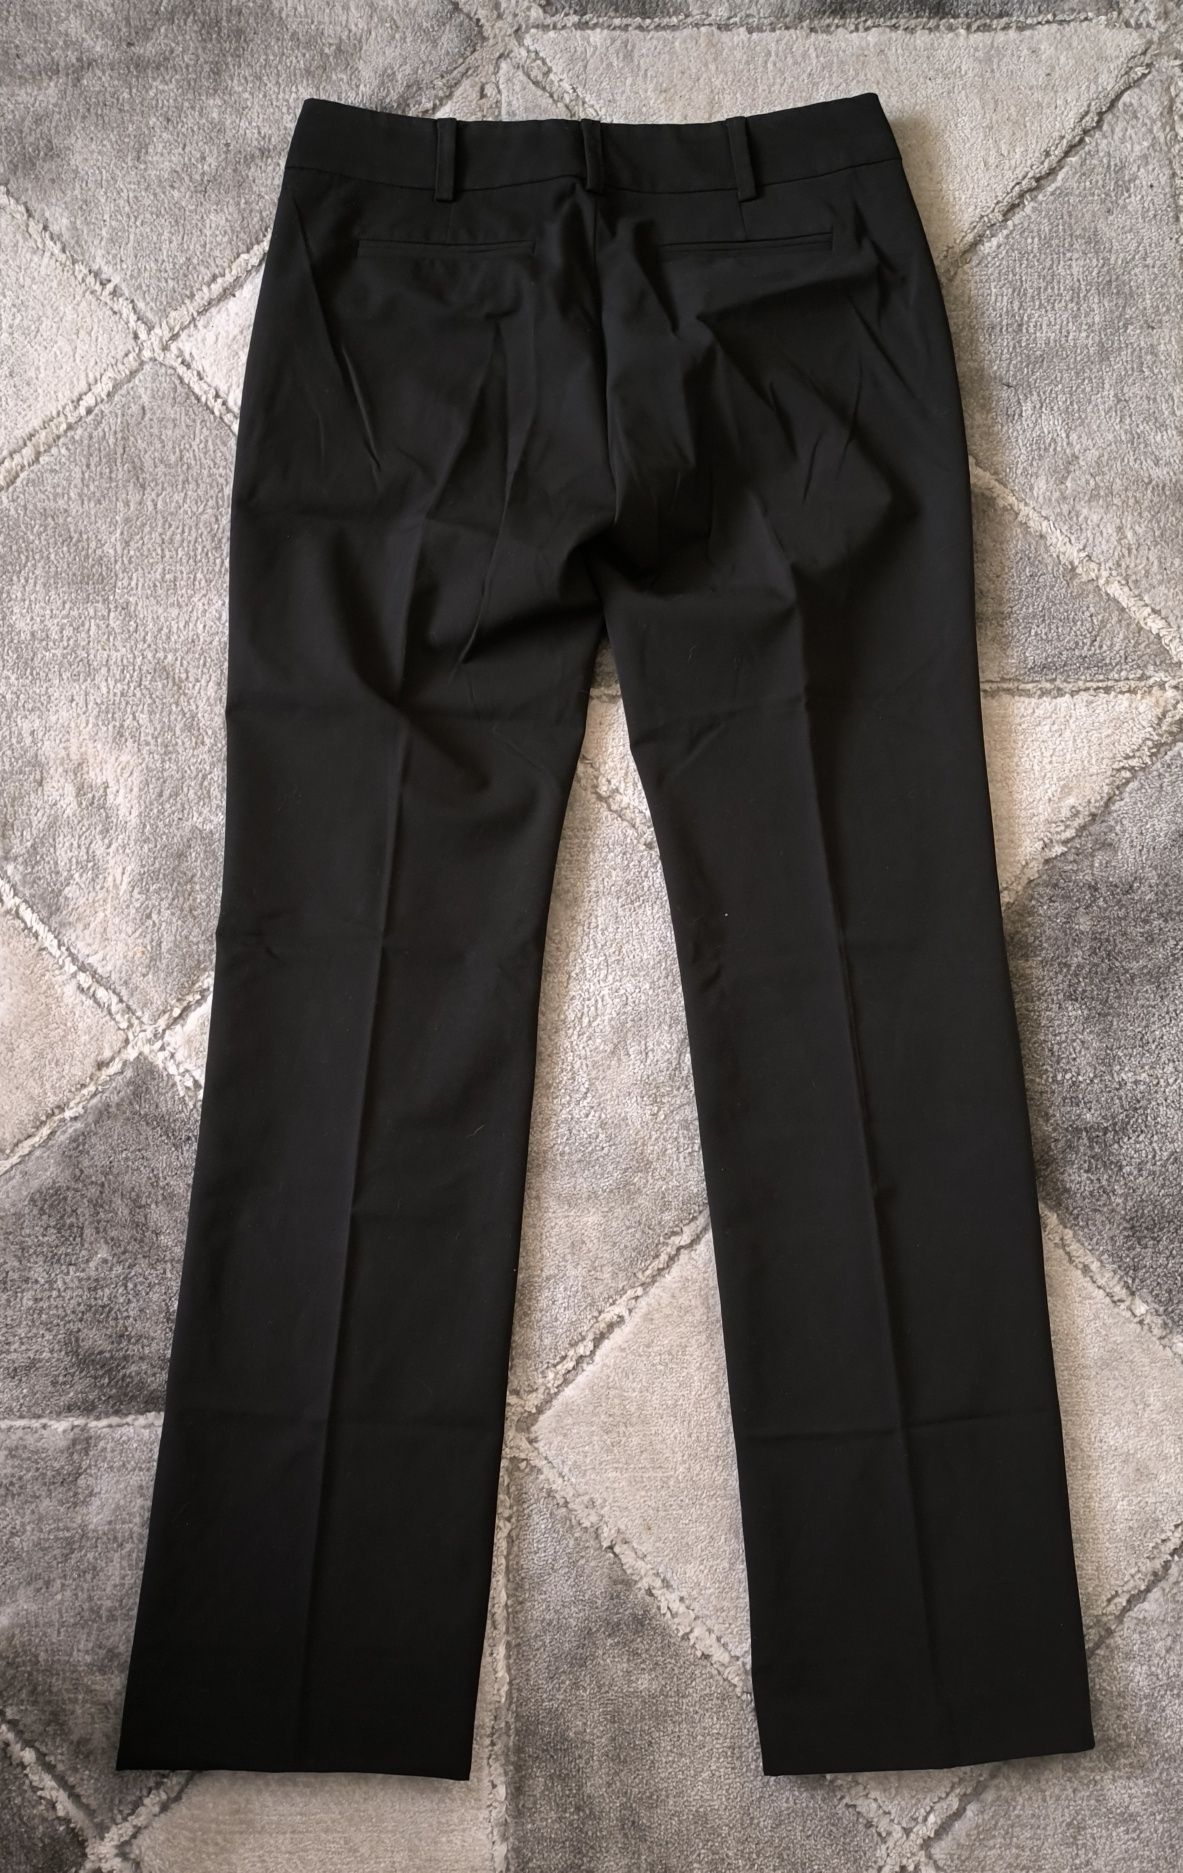 Spodnie damskie klasyczne Mexx, rozmiar S (36)